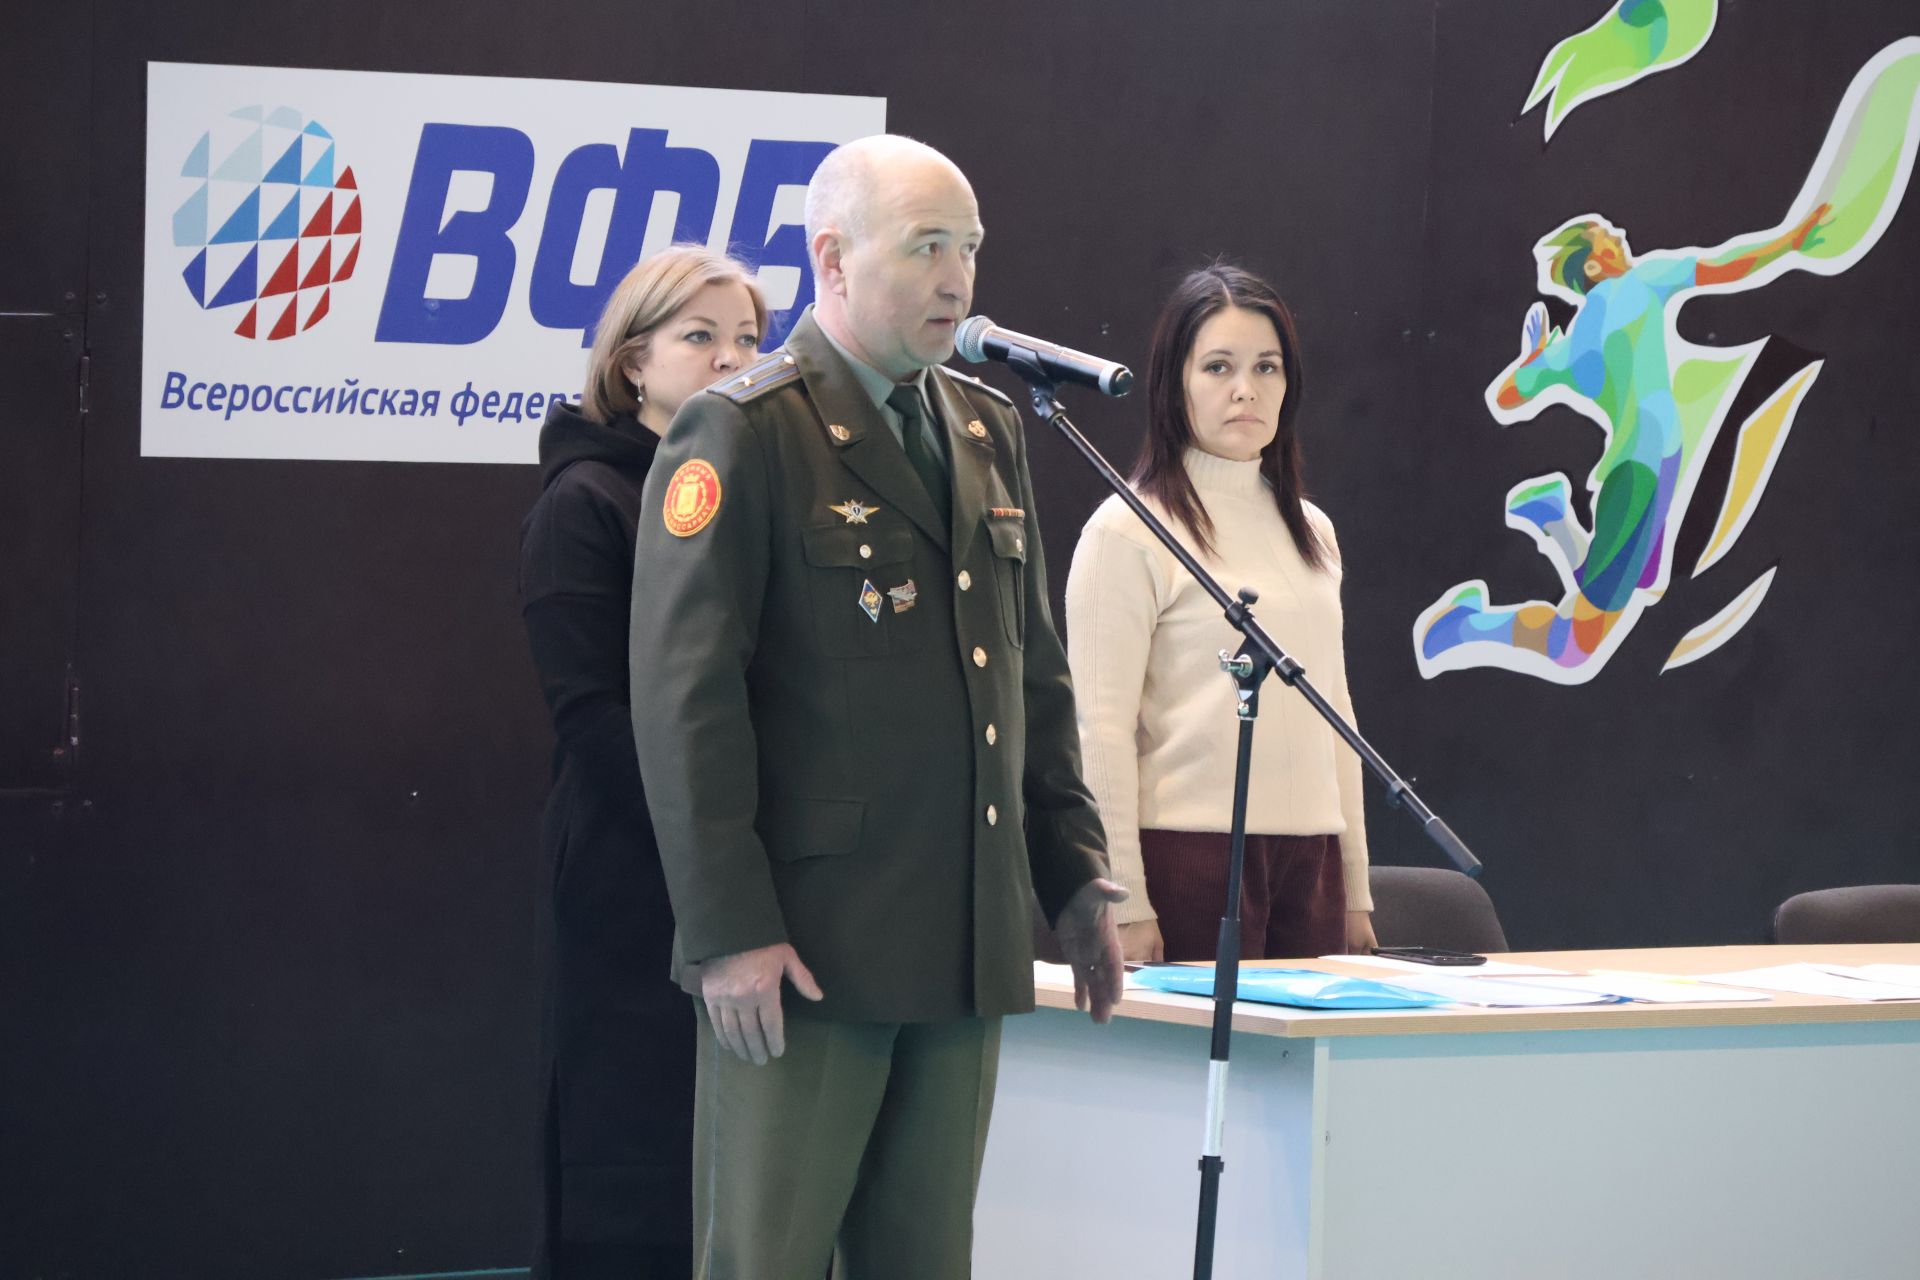 РЕПОРТАЖ: Булачак солдатлар Актаныш районы хәрби комиссарының кубогына ярышалар(+шәп фотолар)